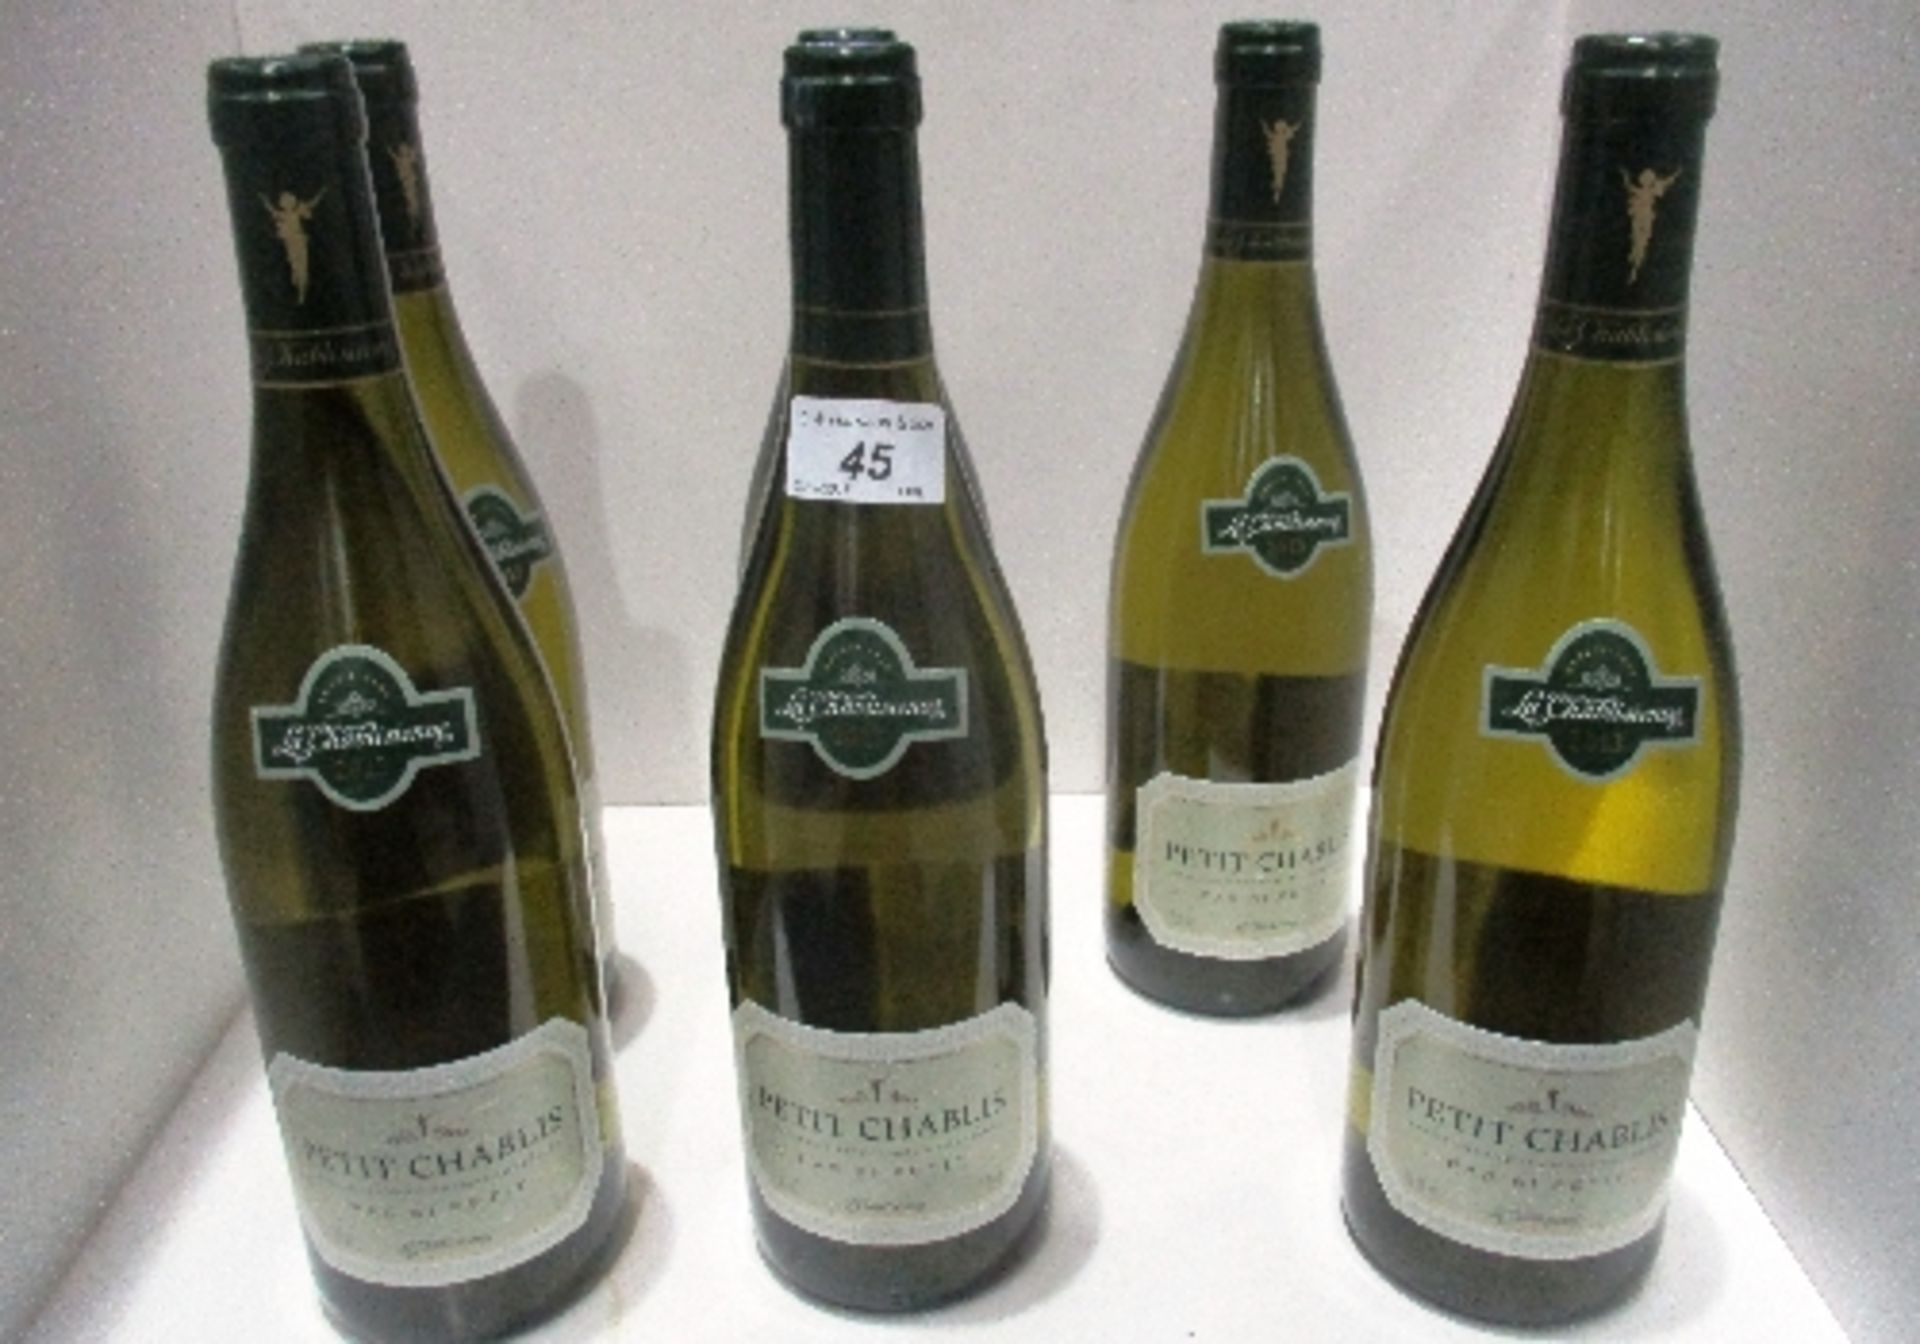 6 x 75cl bottles of La Chablisienne Petit Chablis - 2013